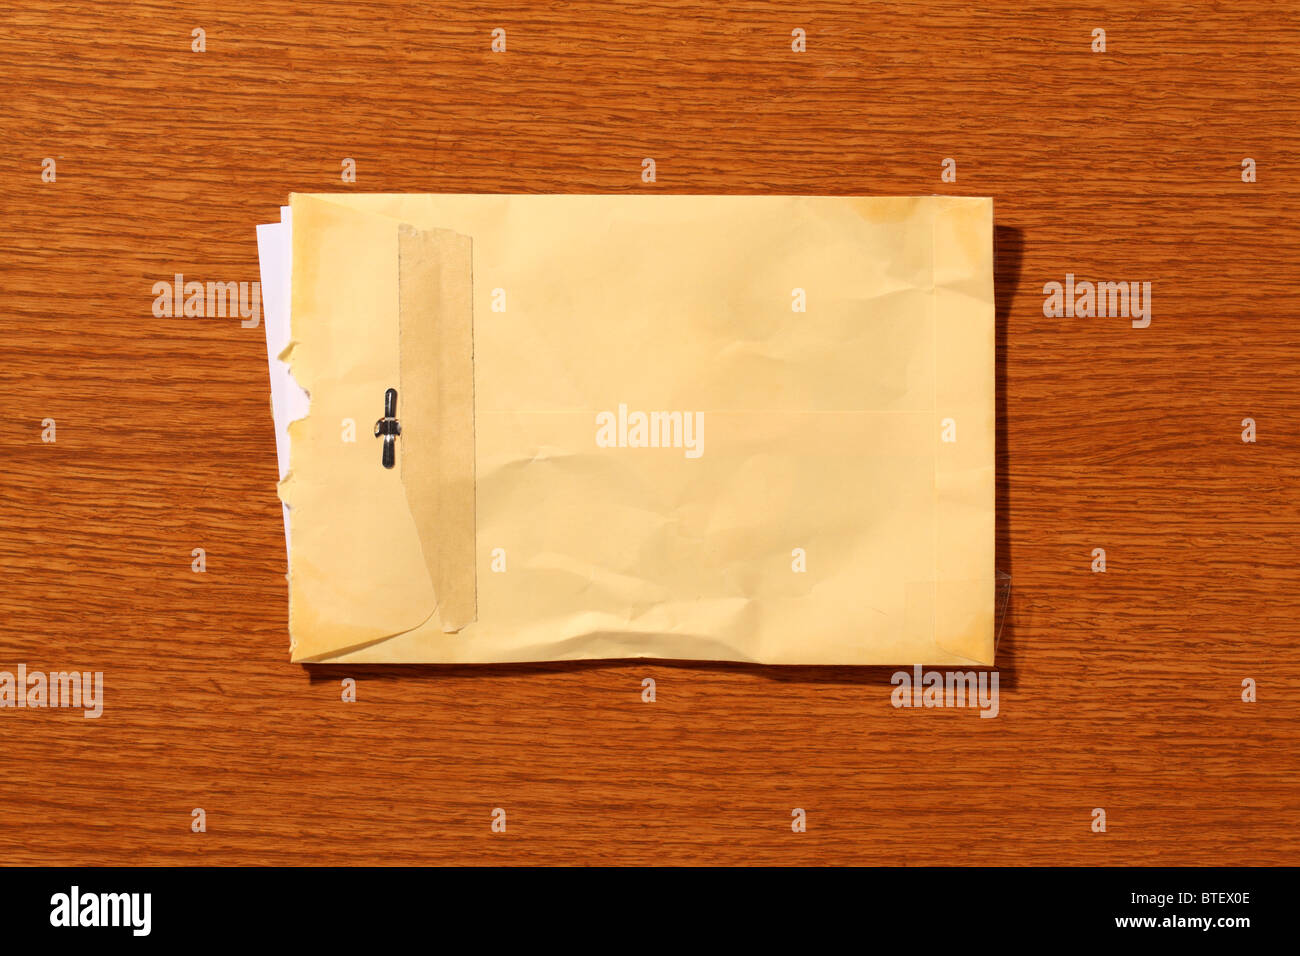 Une enveloppe postale postal utilisé à ouvrir. Fond brun à grain de bois Banque D'Images